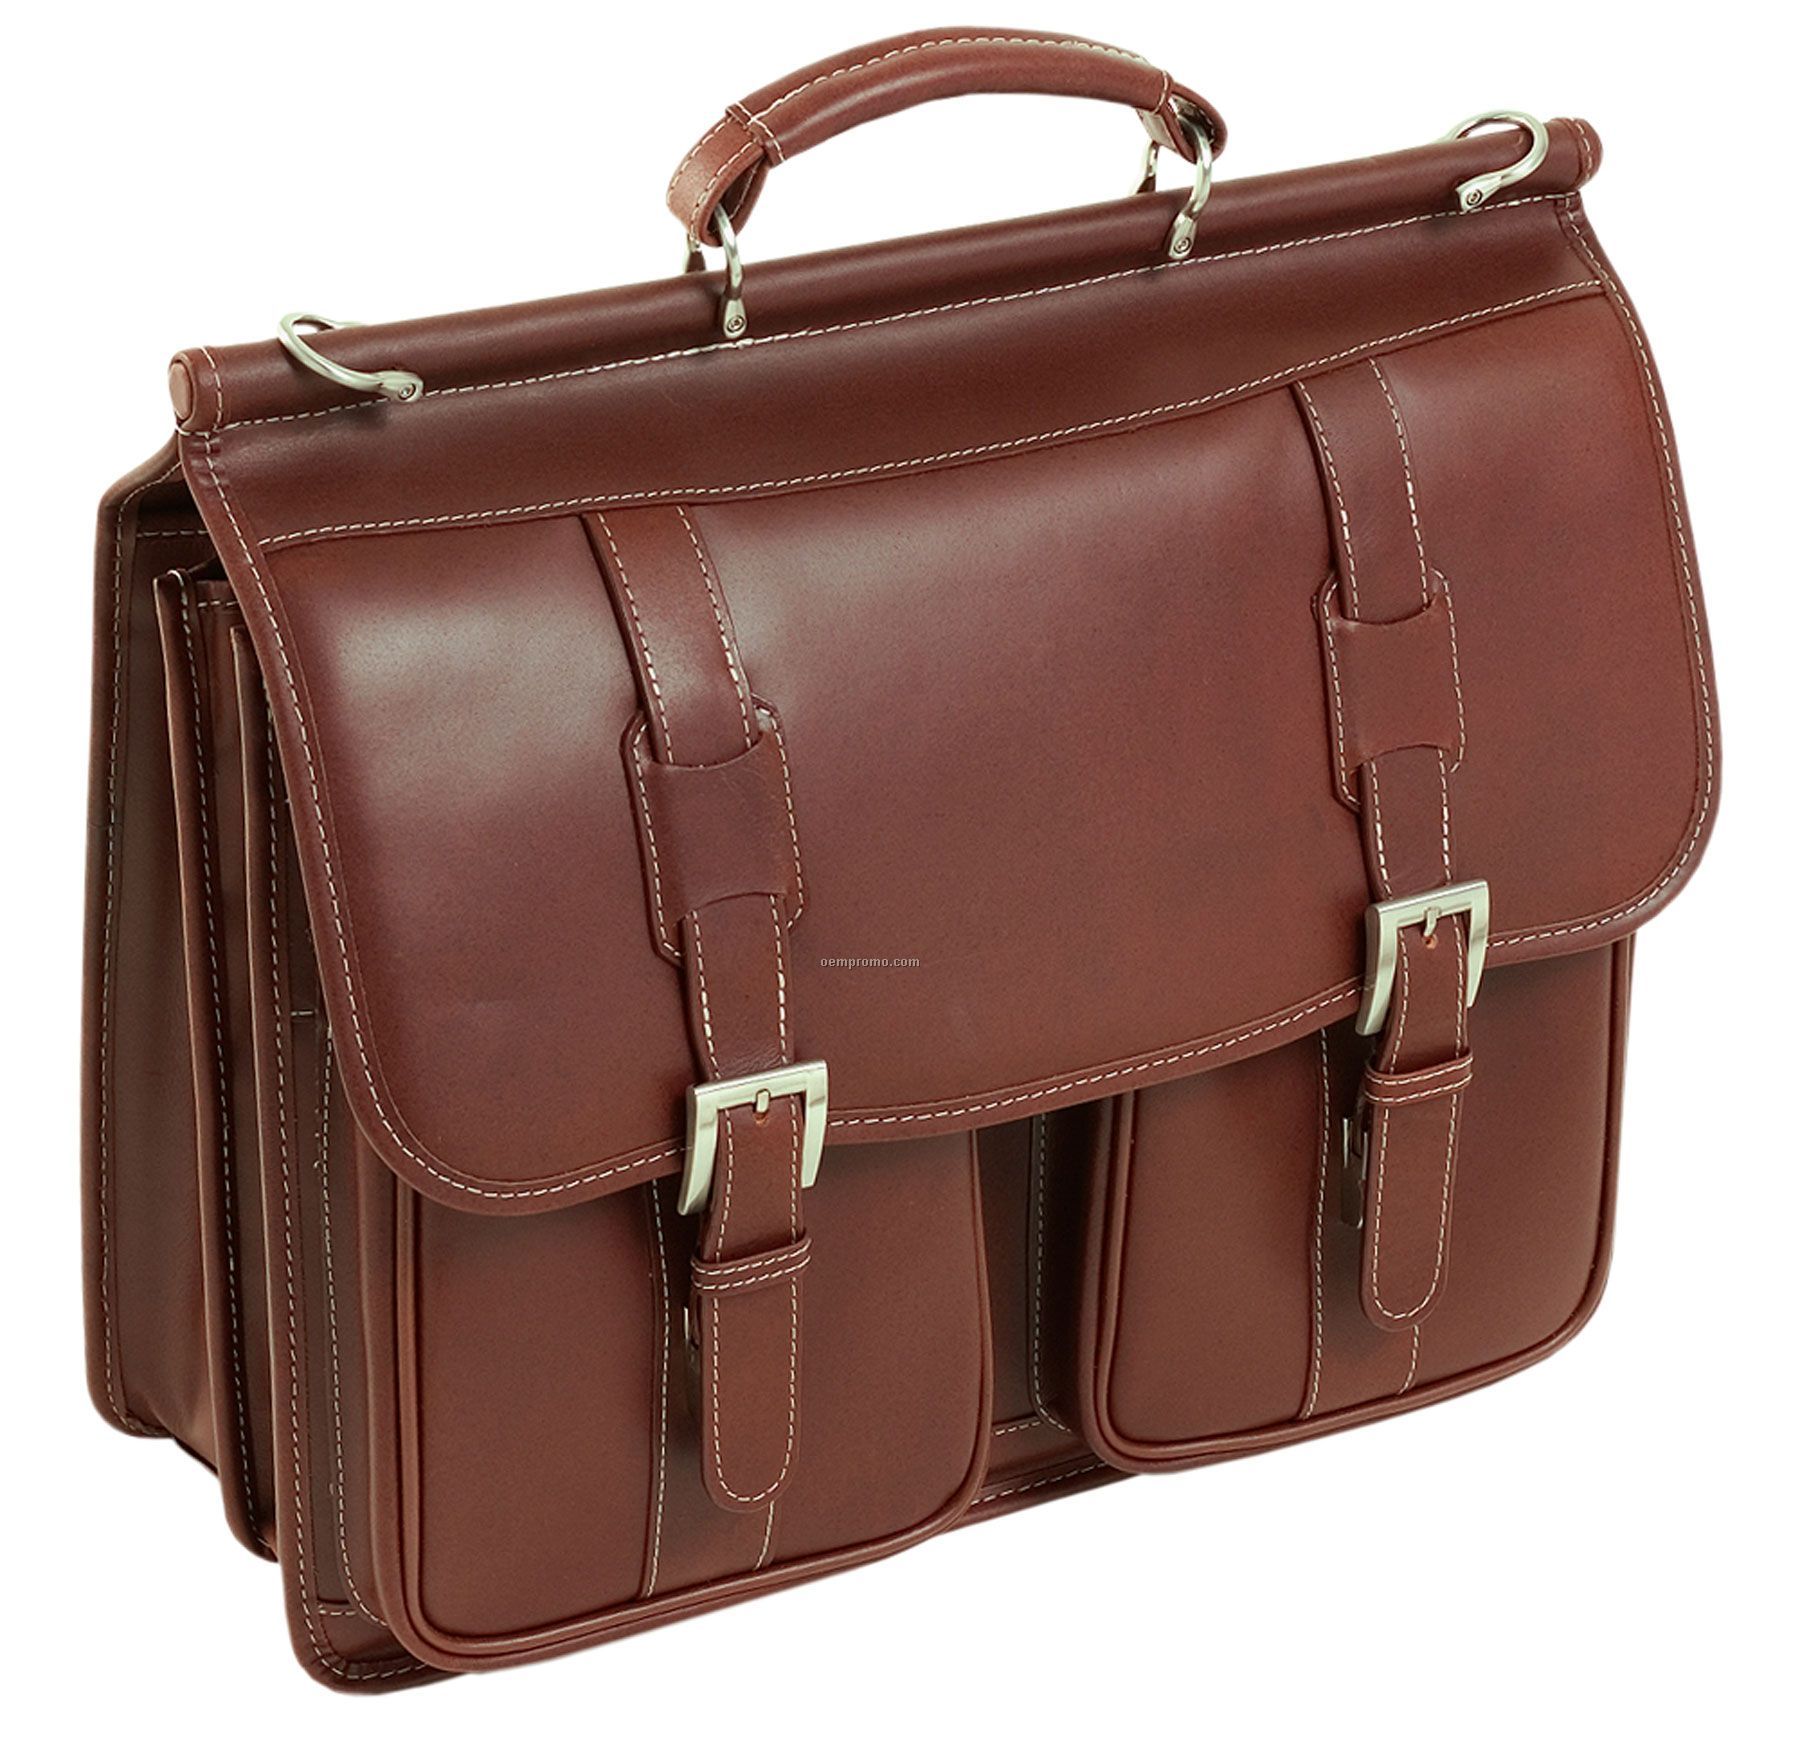 Signorini Leather Double Compartment Laptop Case - Cognac